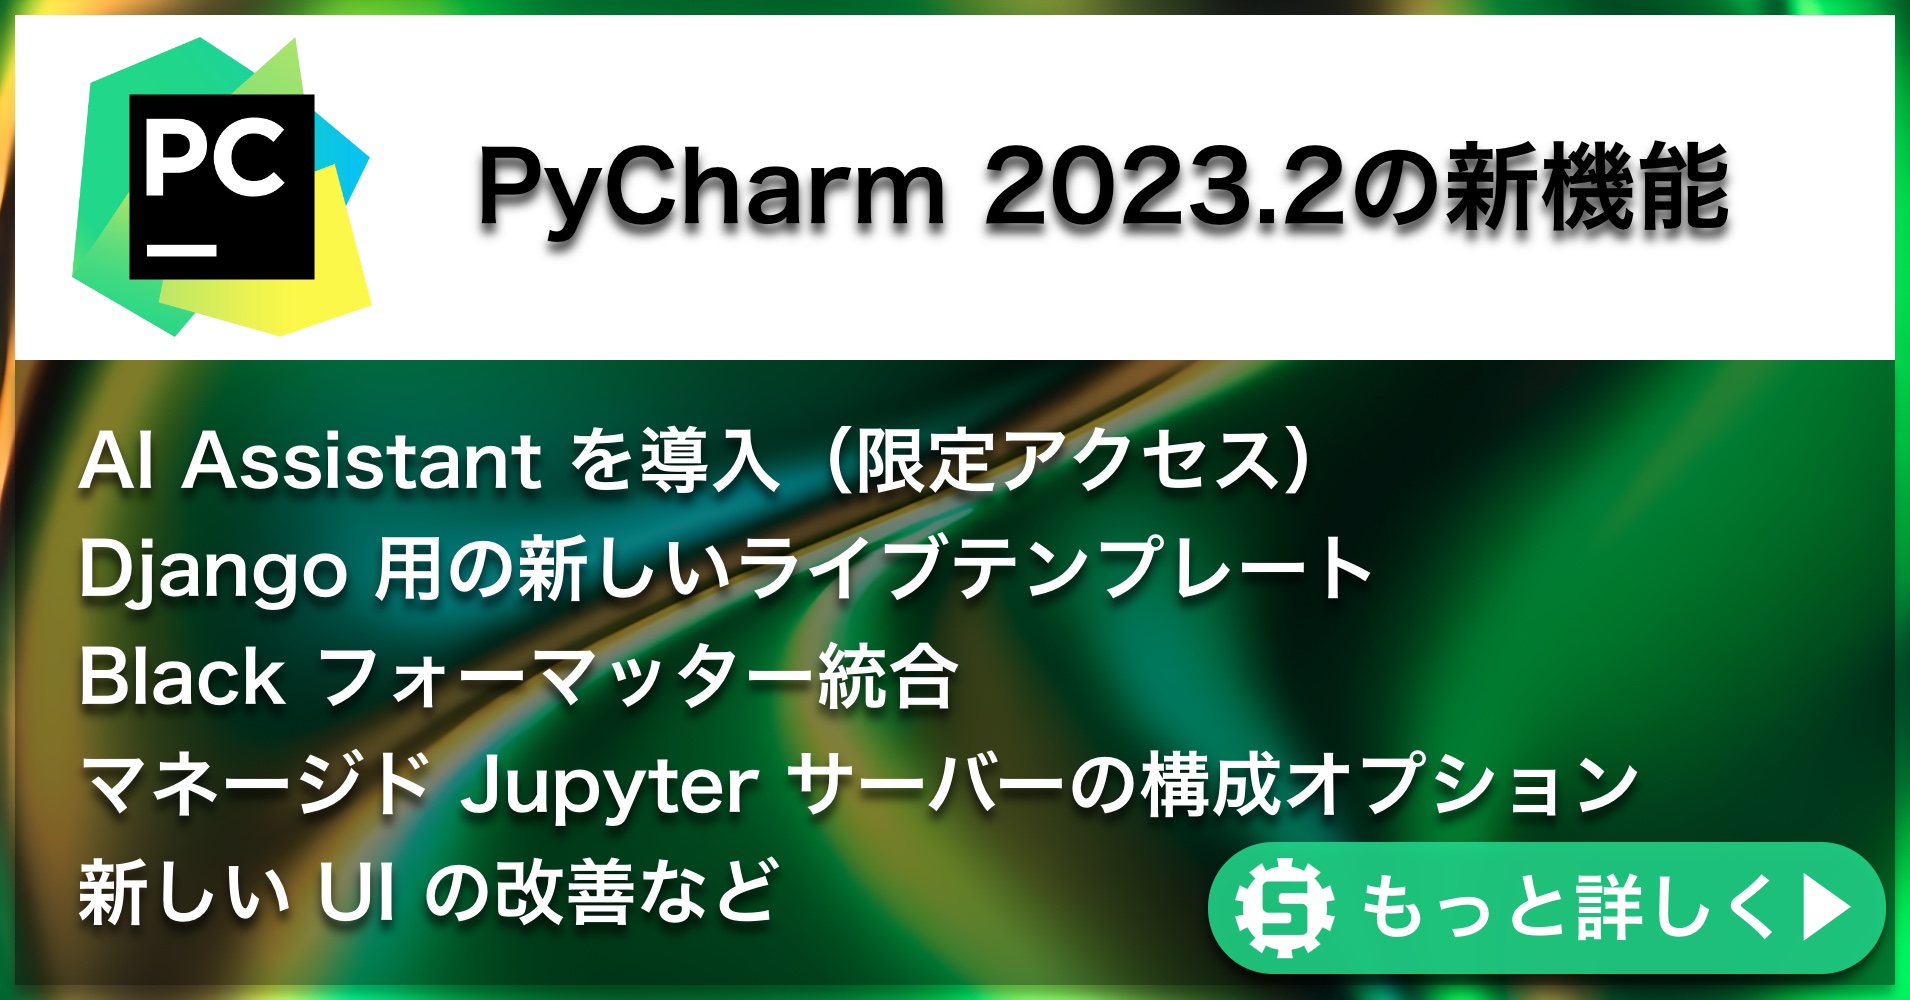 PyCharm 2023.2の新機能